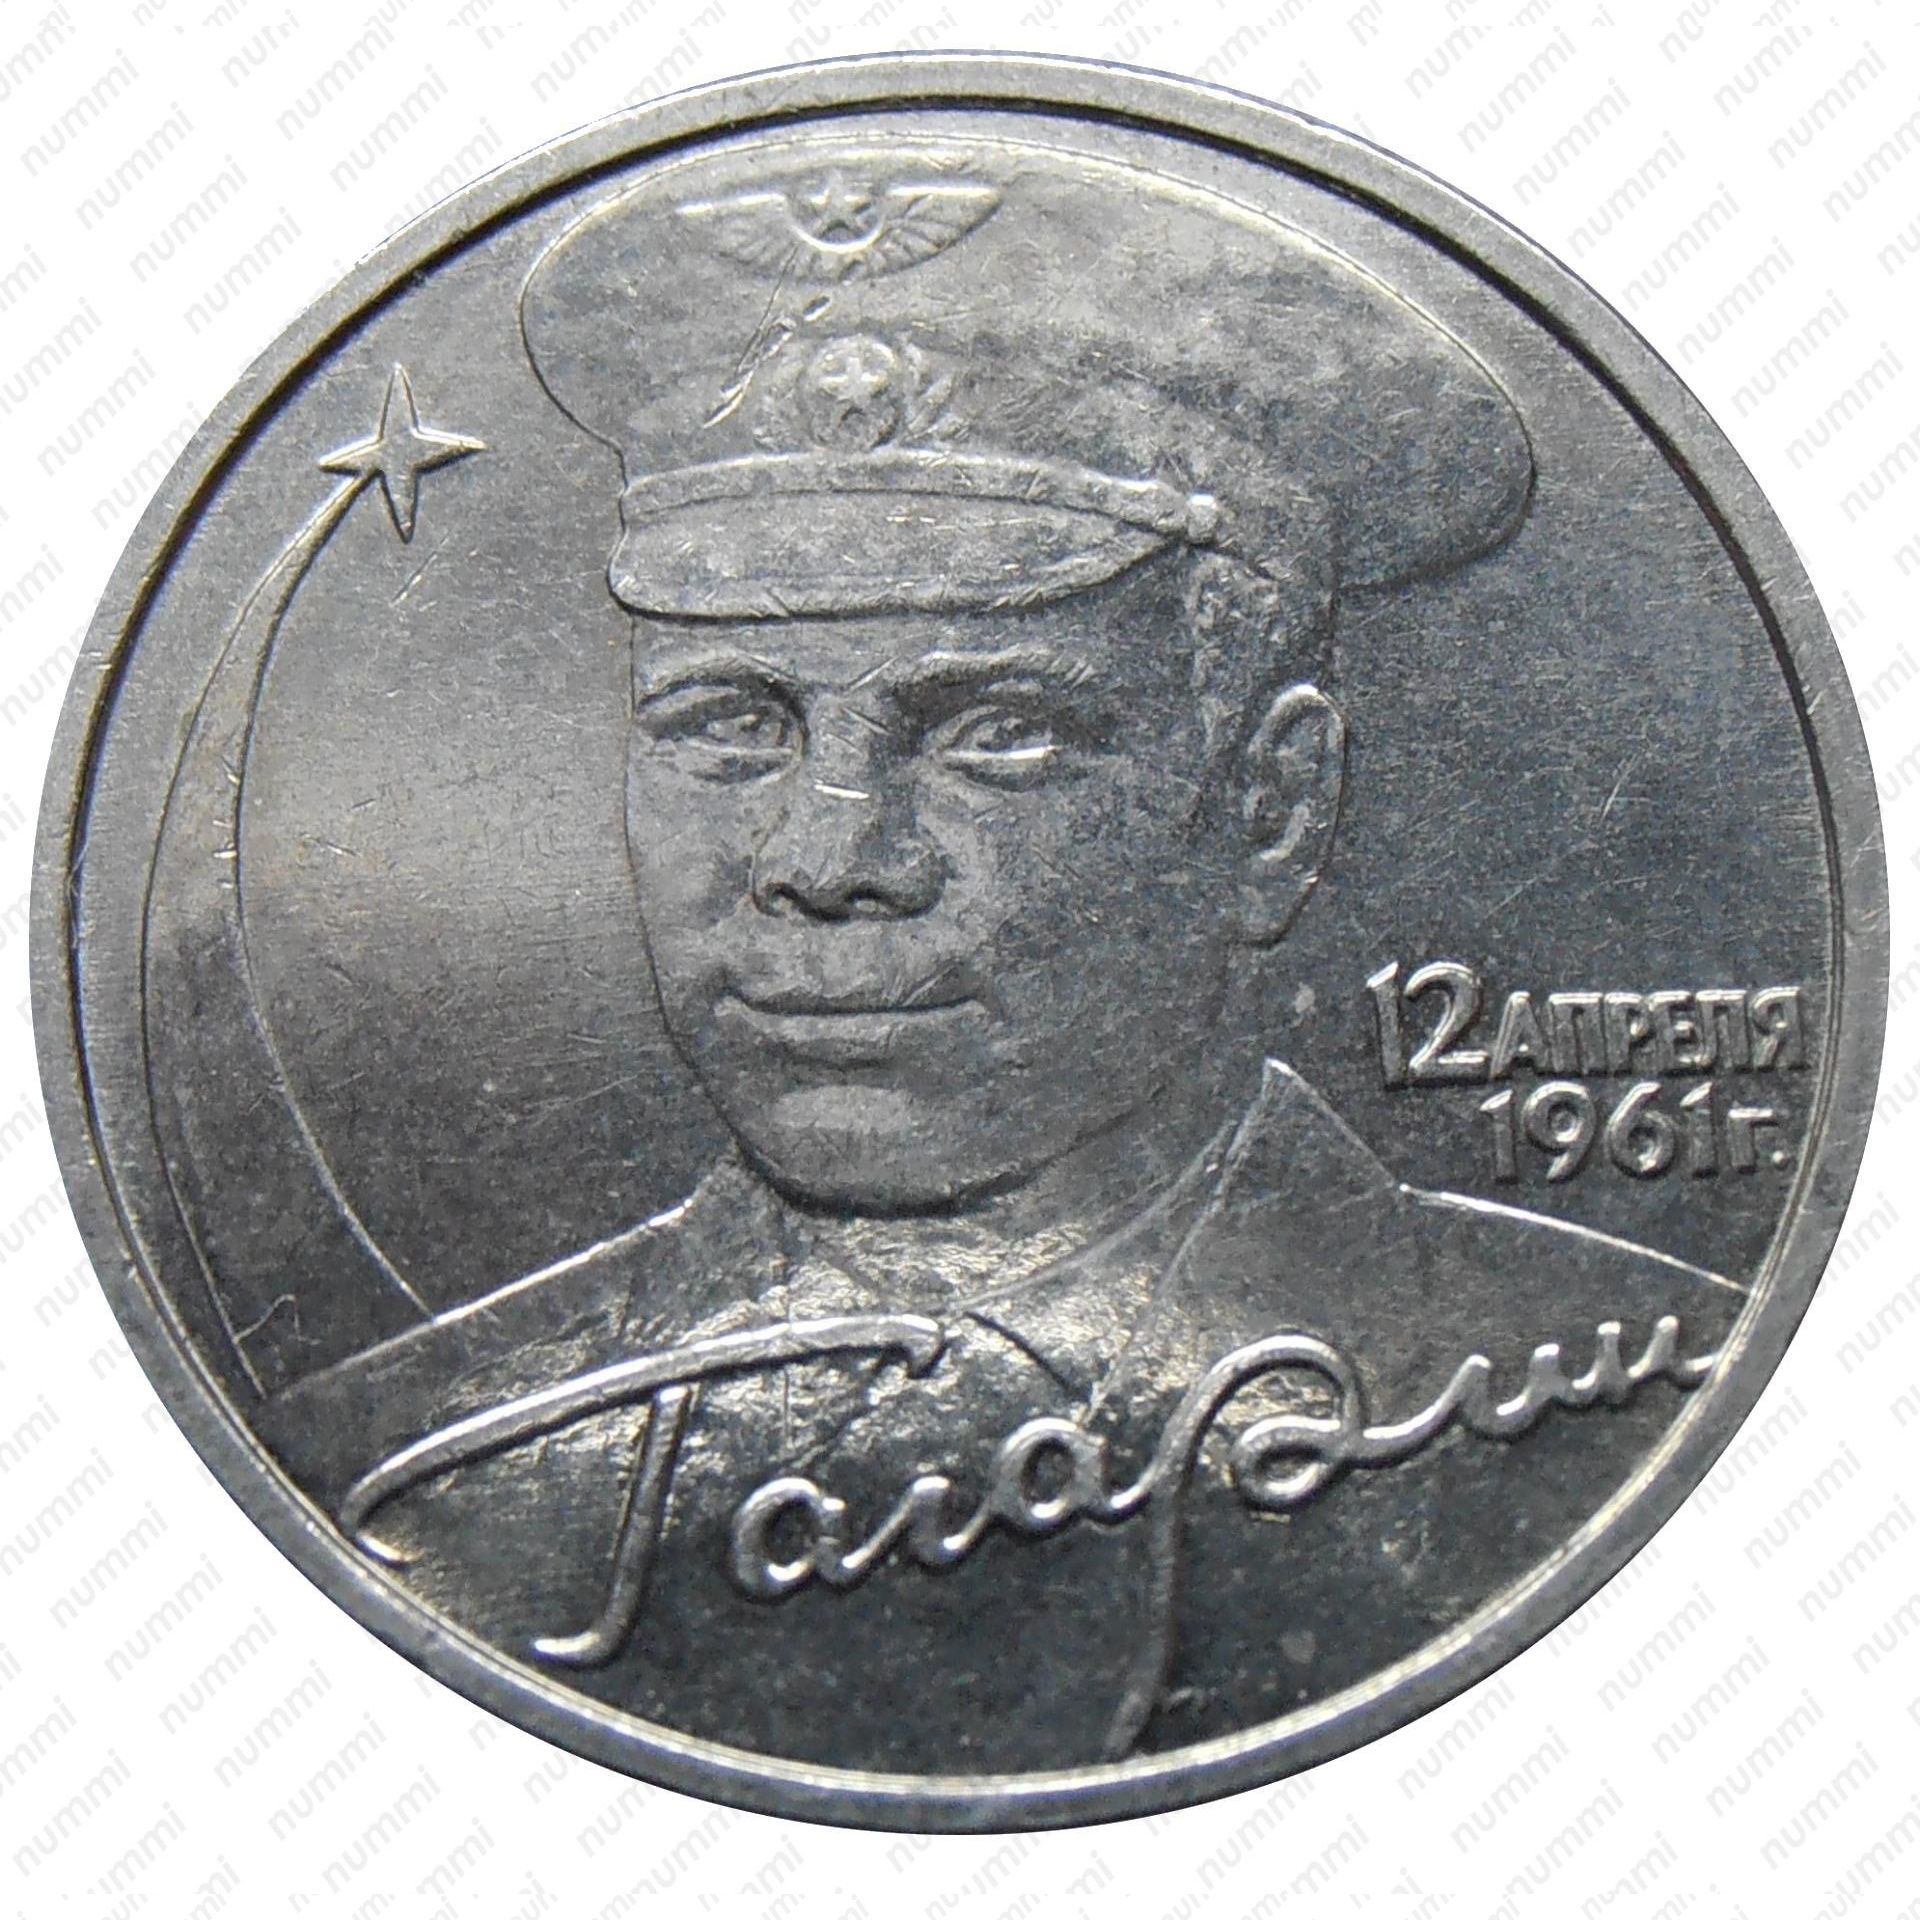 Монеты 2001 года цена стоимость монеты. Юбилейная 2 рубля Гагарин. 2 Рубля 2001 Гагарин. Юбилейные монеты 2 рубля. 2 Рубля 2001 года.